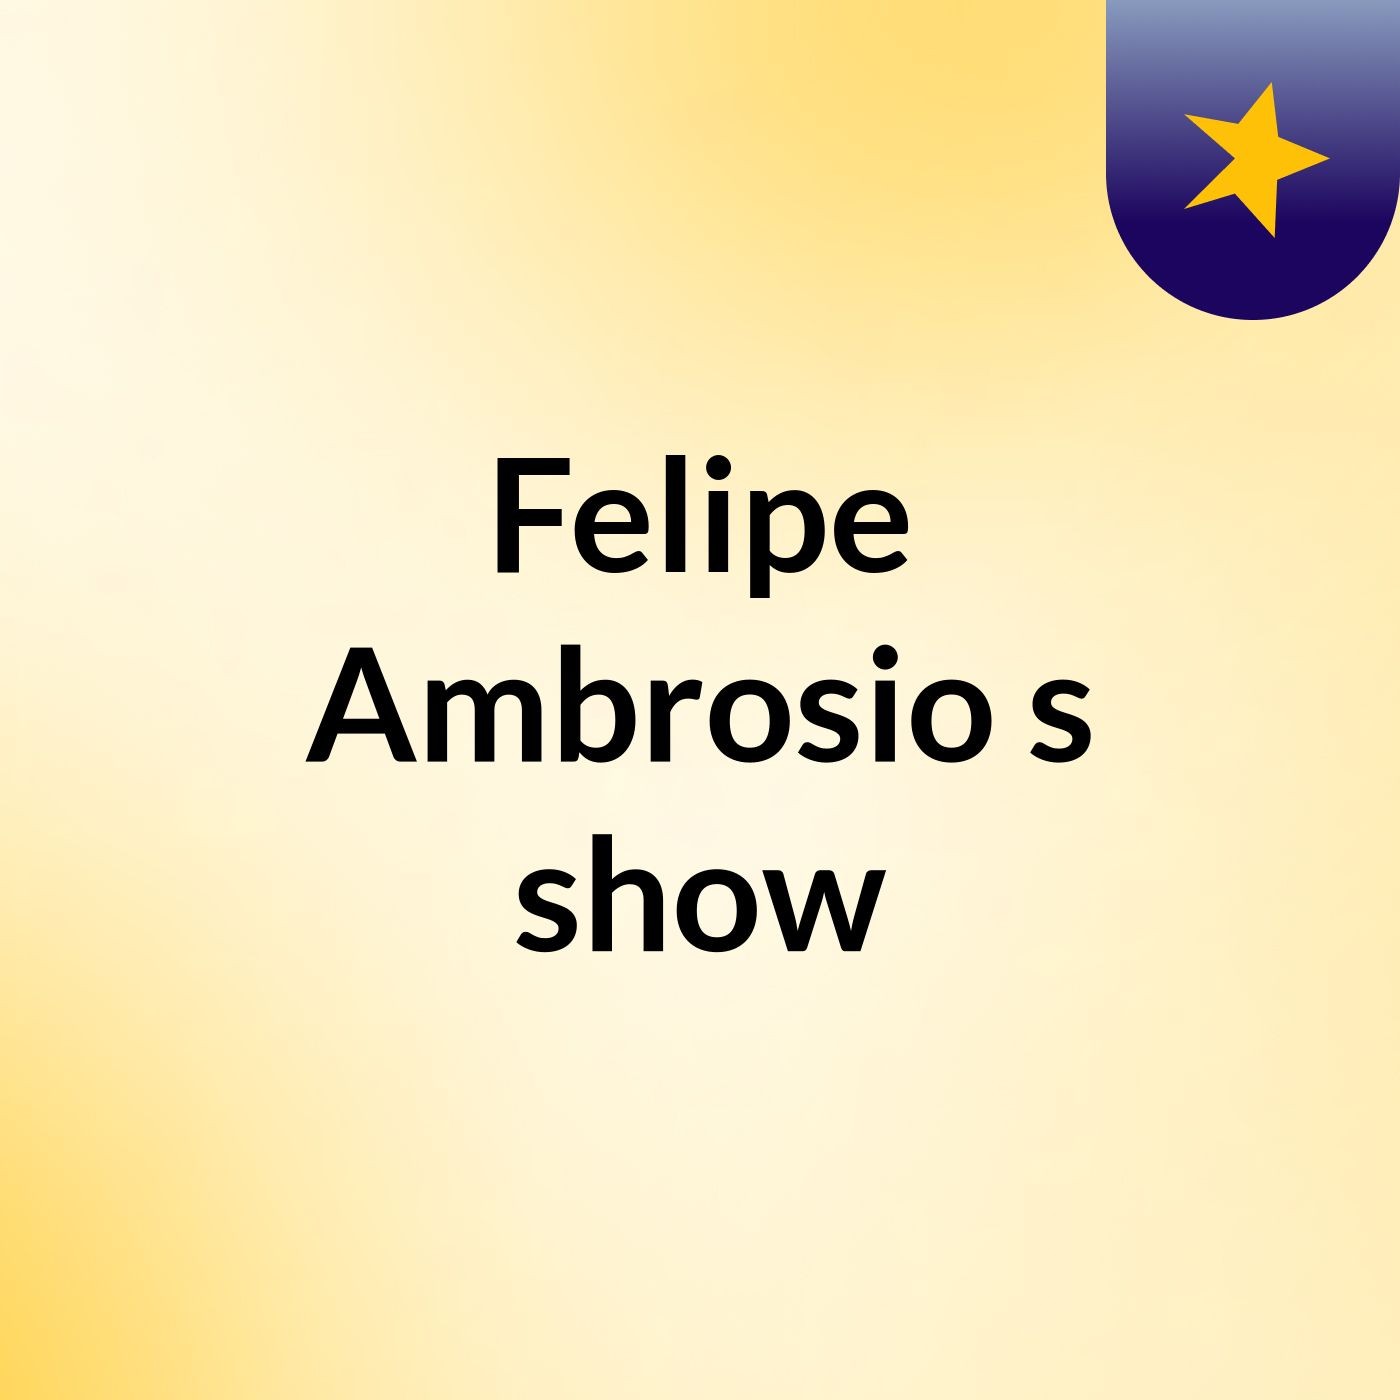 Felipe Ambrosio's show